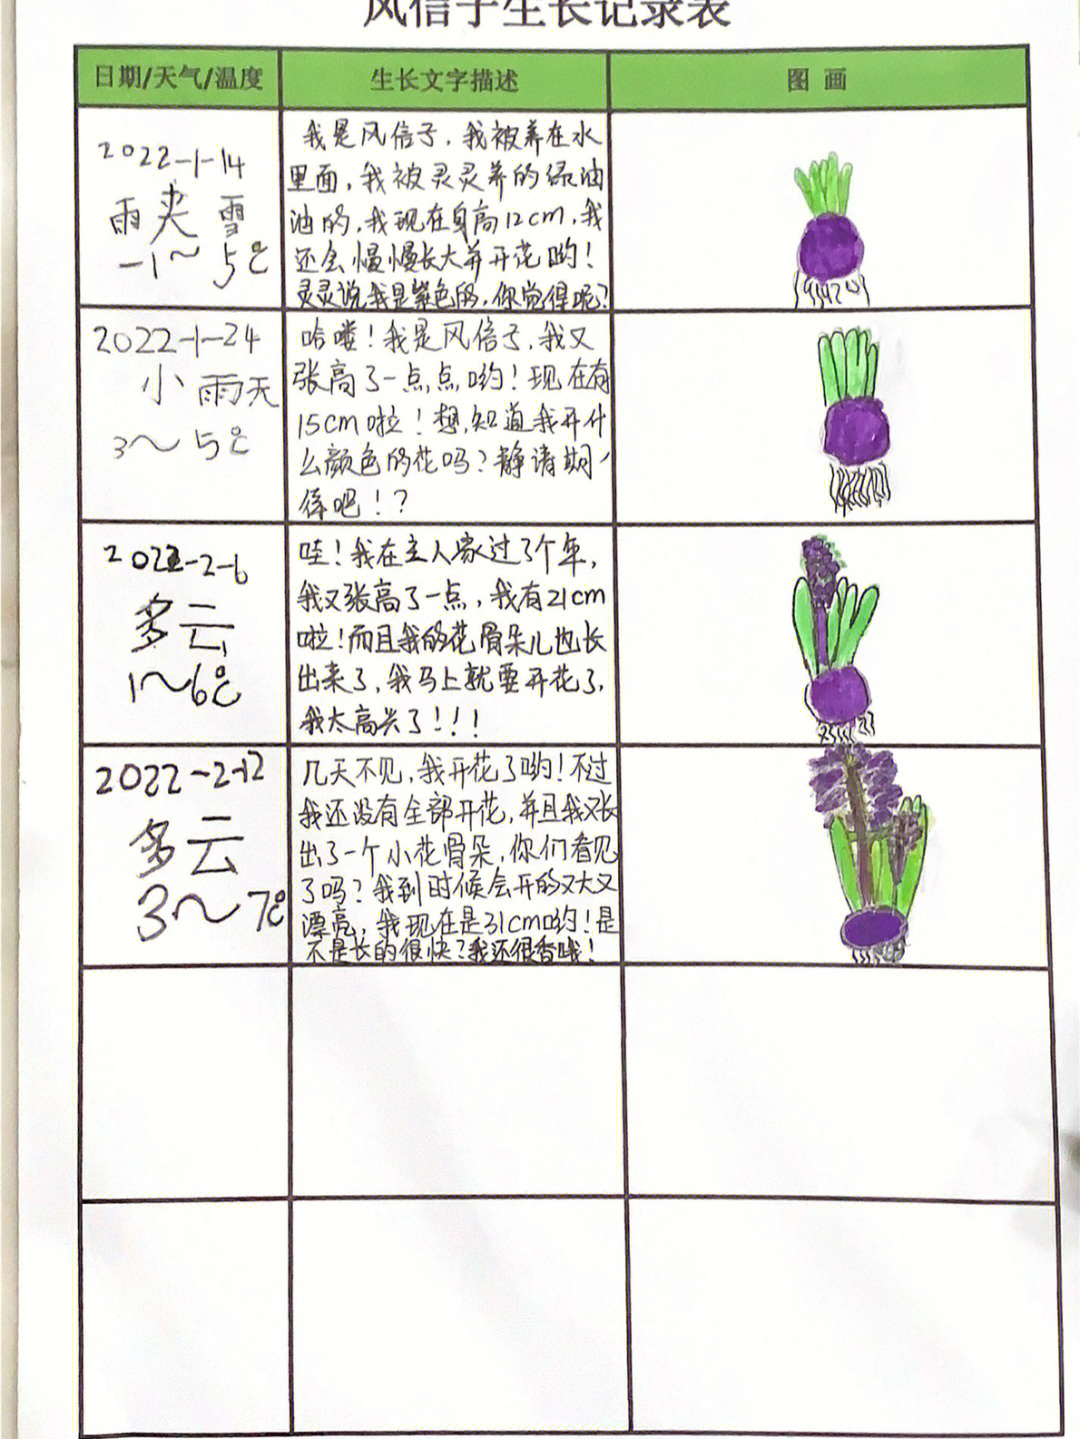 葡萄风信子植物记录卡图片